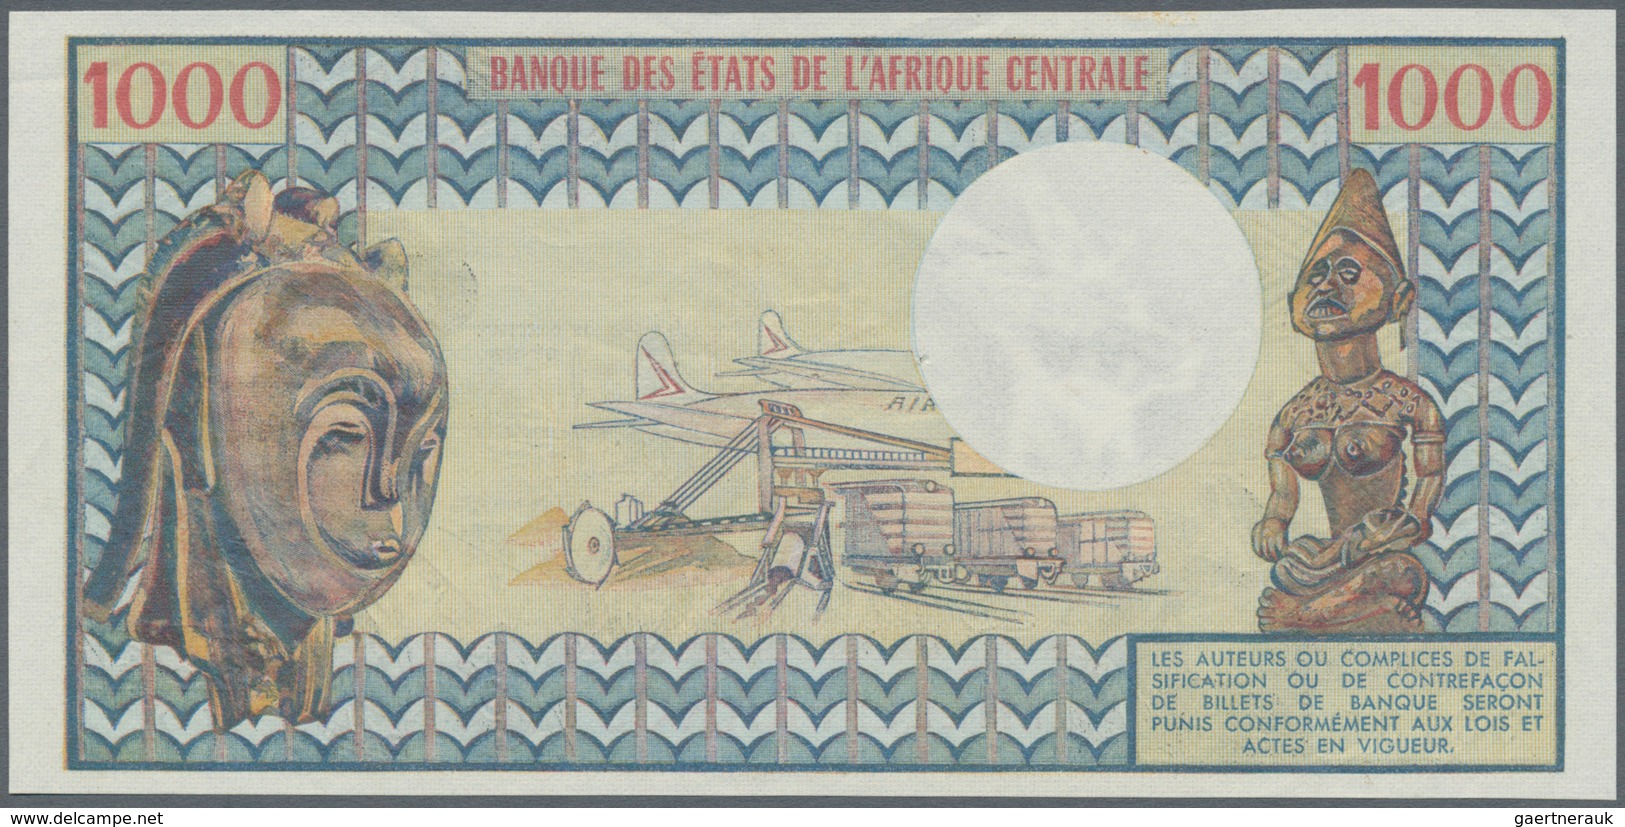 Central African Republic / Zentralafrikanische Republik: 1000 Francs ND(1974) P. 2 République Centra - Centraal-Afrikaanse Republiek